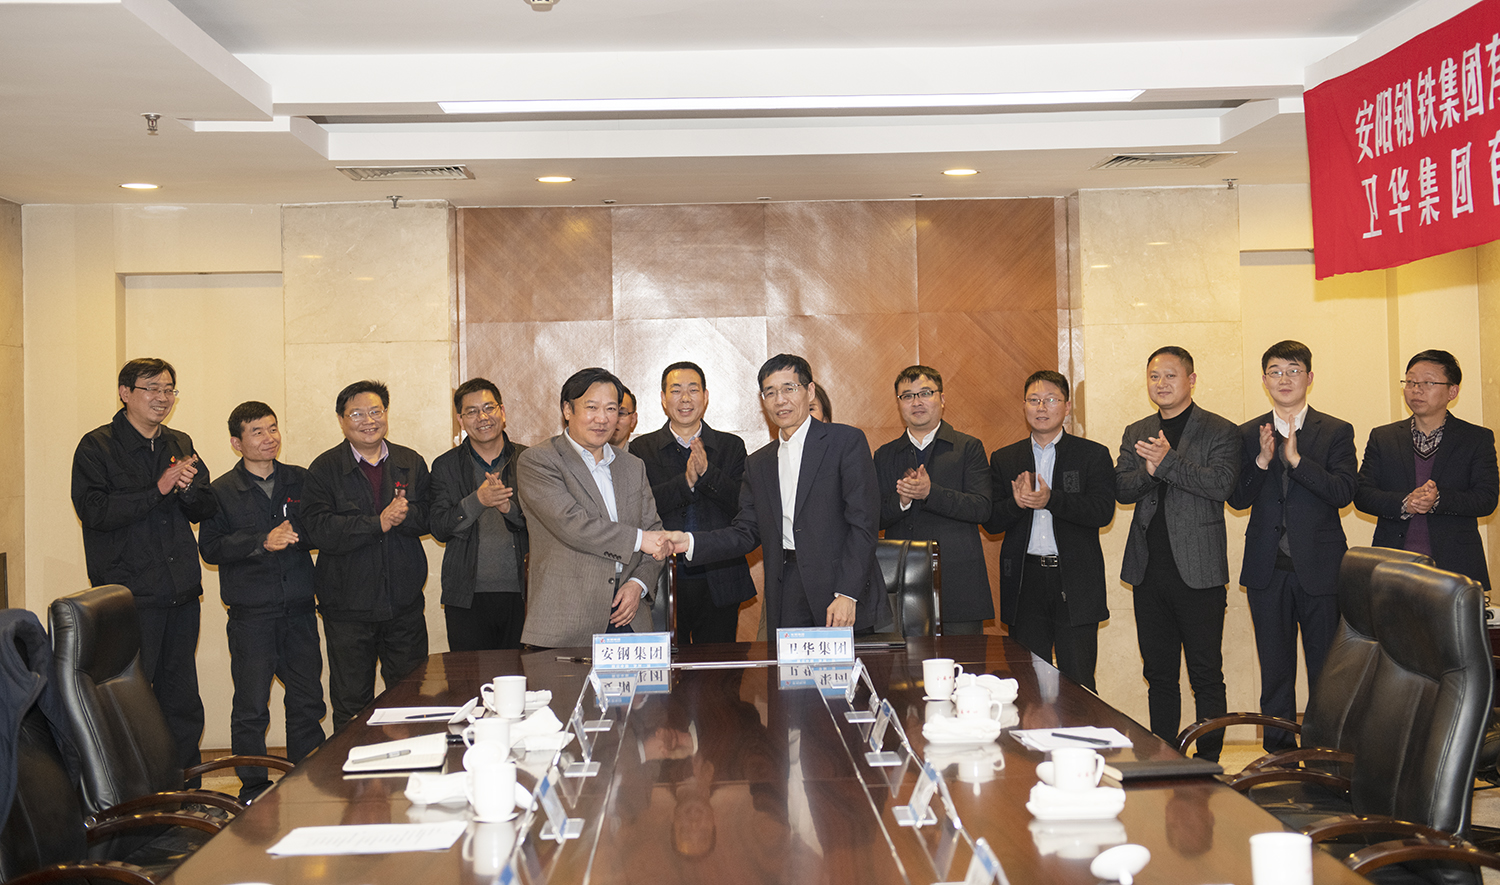 共赢发展丨卫华集团与安阳钢铁集团有限责任公司签订战略合作协议